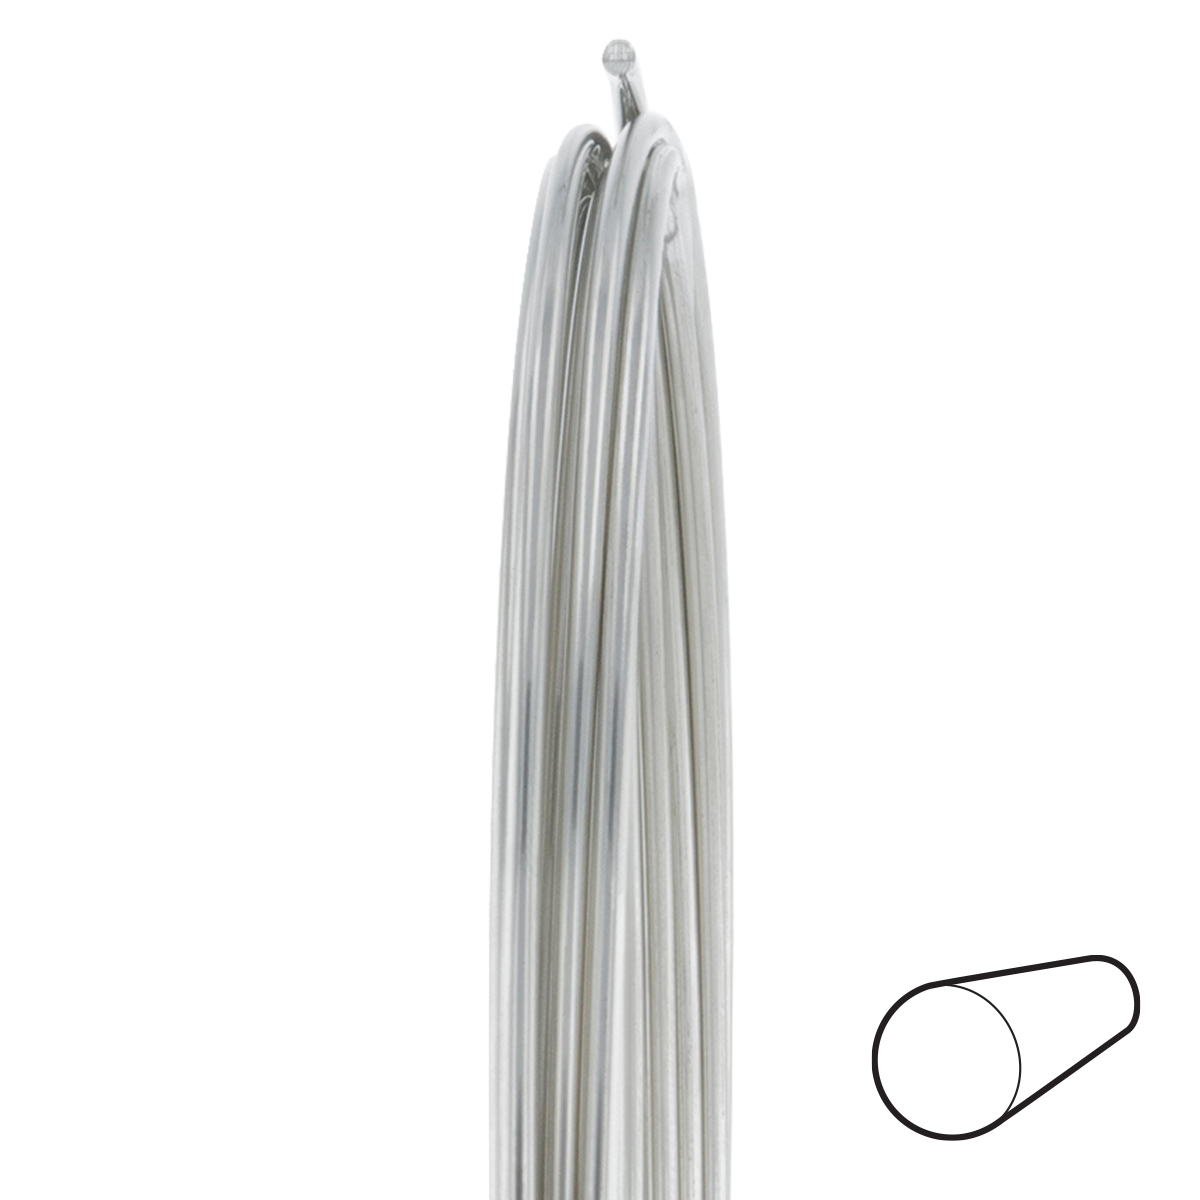 21 Gauge Round Half Hard Nickel Silver Wire: Wire Jewelry, Wire Wrap  Tutorials